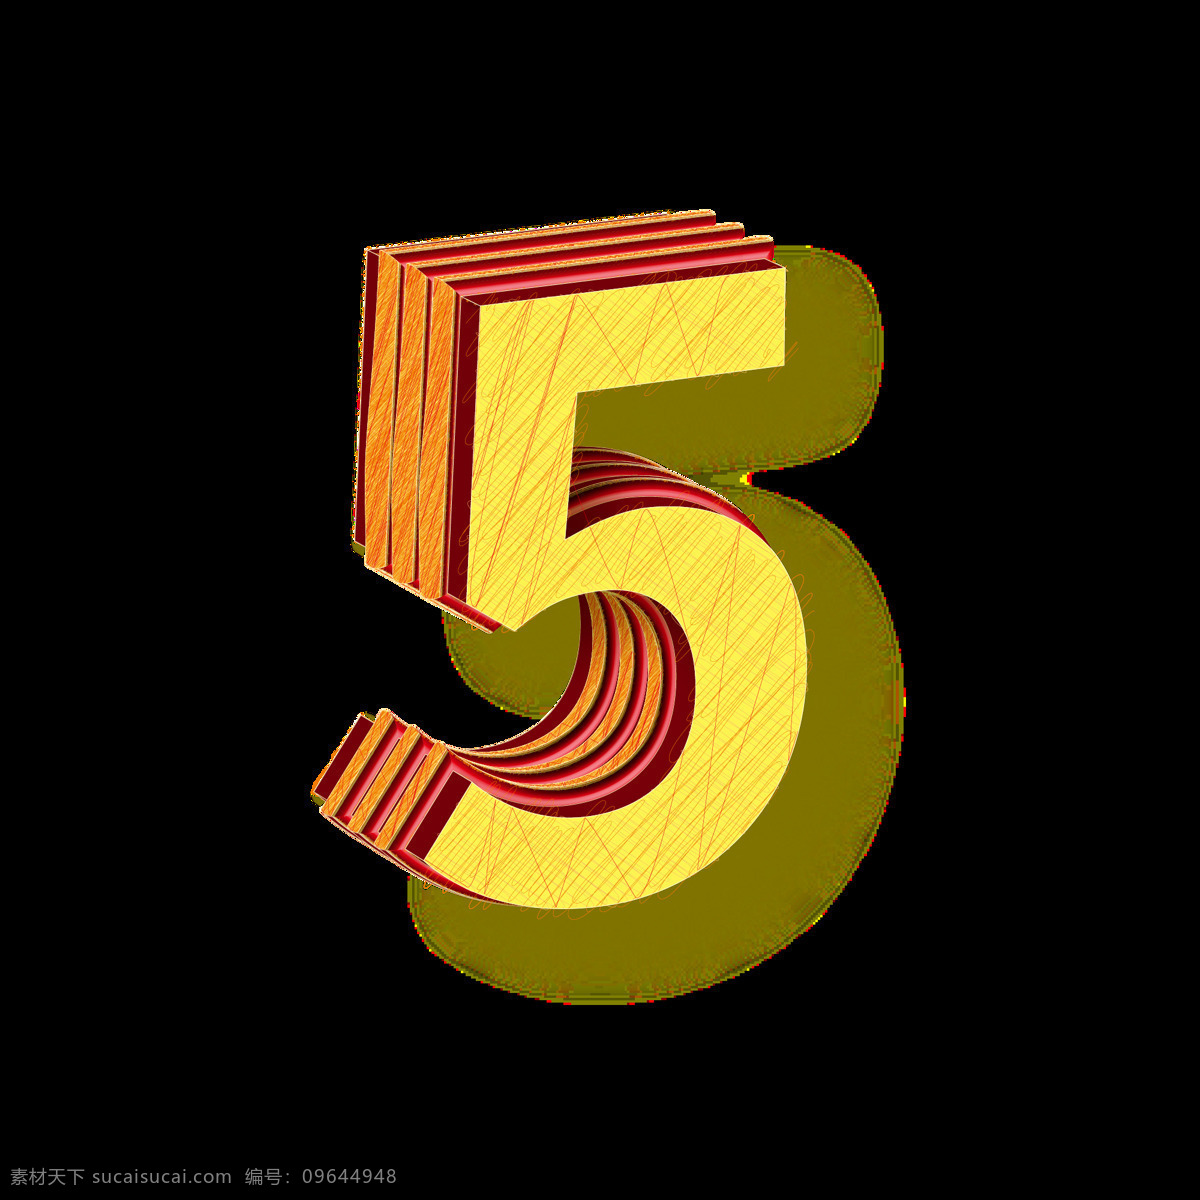 立体 数字 艺术 字 元素 3d数字5 金色数字5 矢量数字5 数字艺术字 3d 3d艺术字 3d数字 矢量元素 设计元素 元素设计 字体设计 艺术字 矢量数字